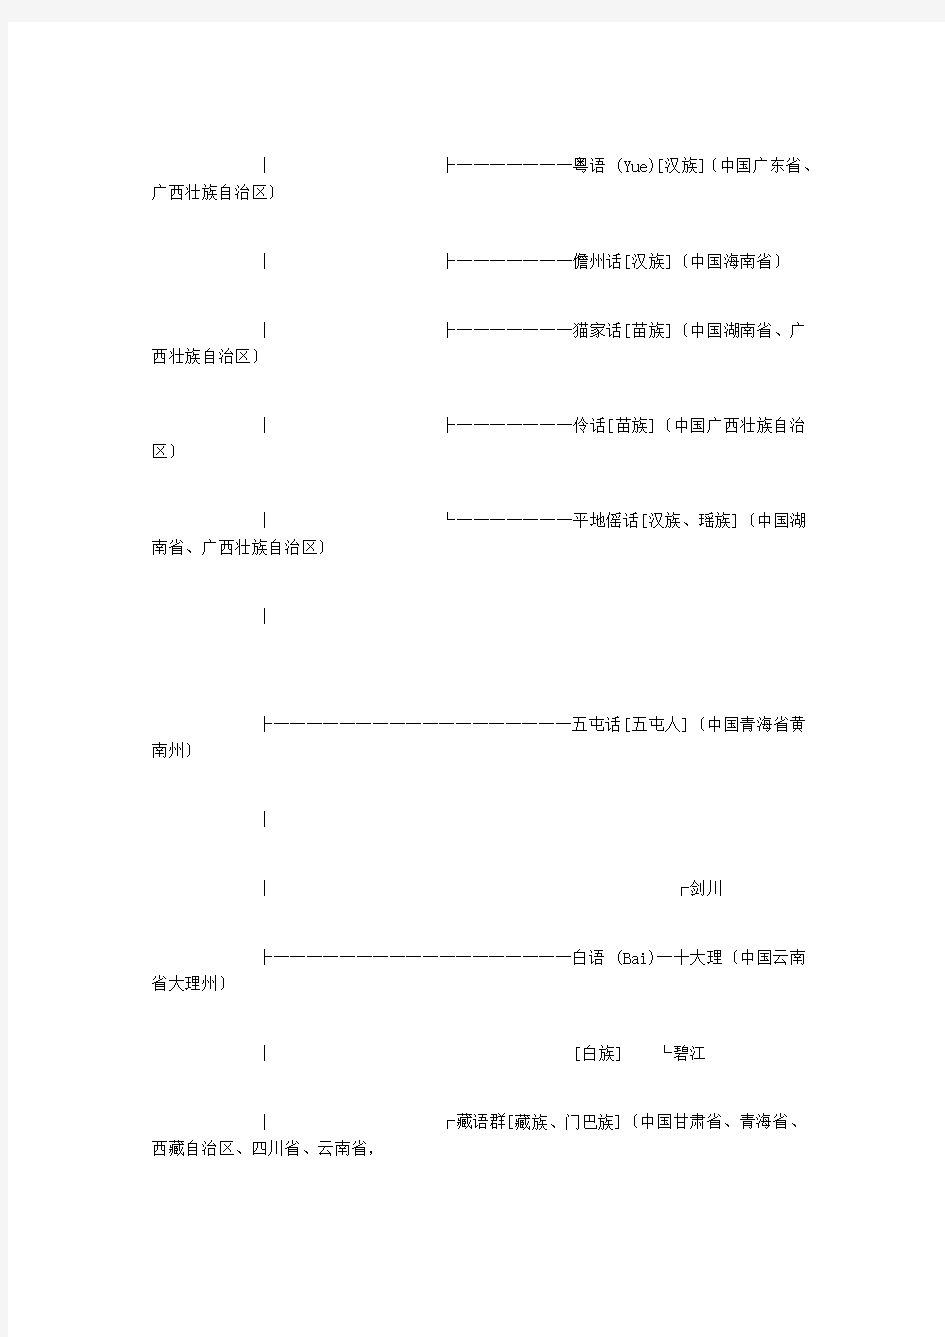 中国方言图谱及汉语发展图谱